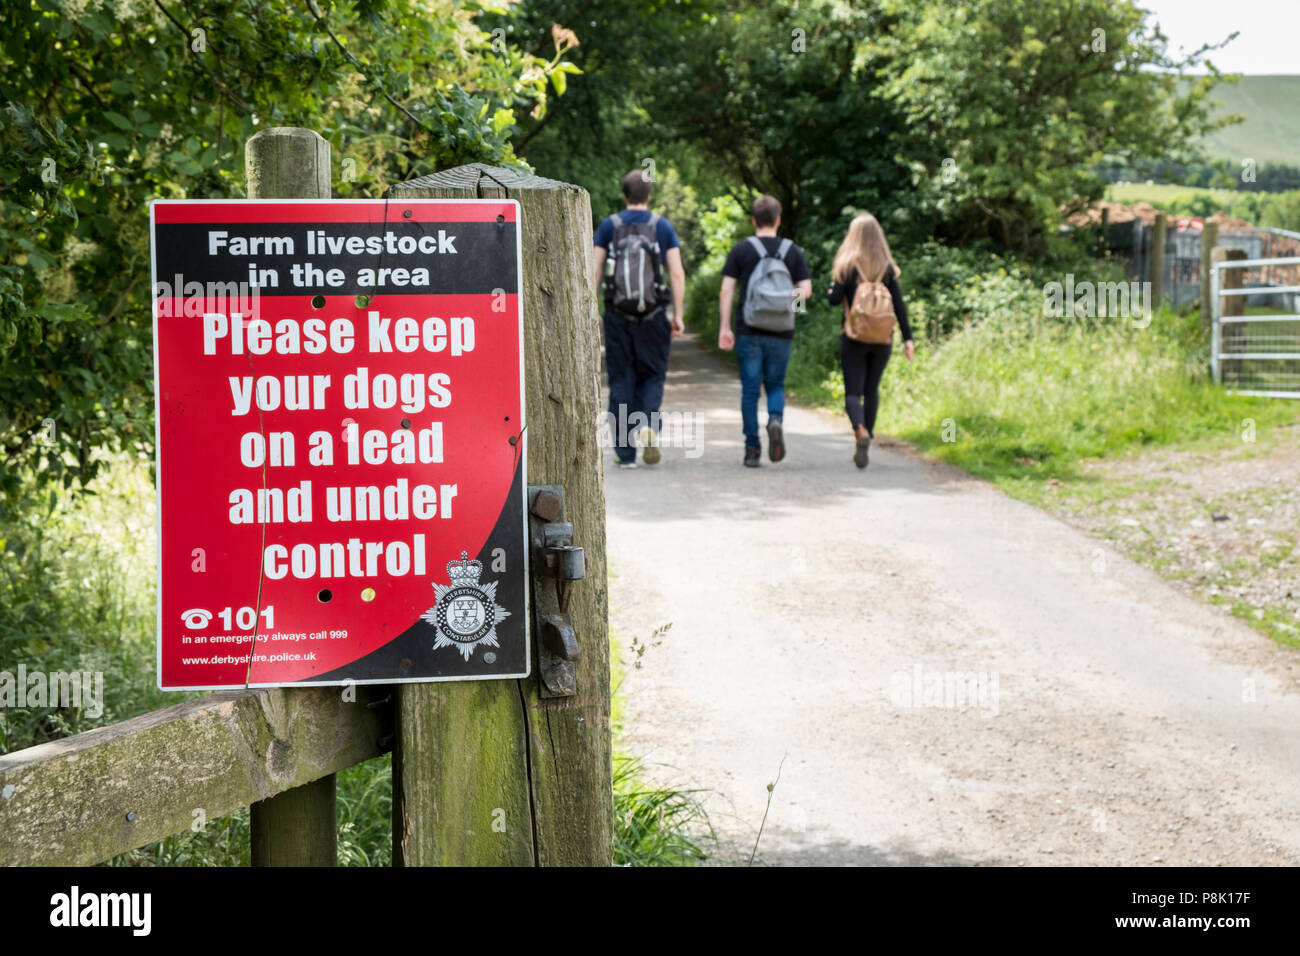 Bestiame d' allevamento segno. Avviso che richiede alle persone di "Si prega di tenere i vostri cani al guinzaglio e sotto controllo", Derbyshire, England, Regno Unito Foto Stock